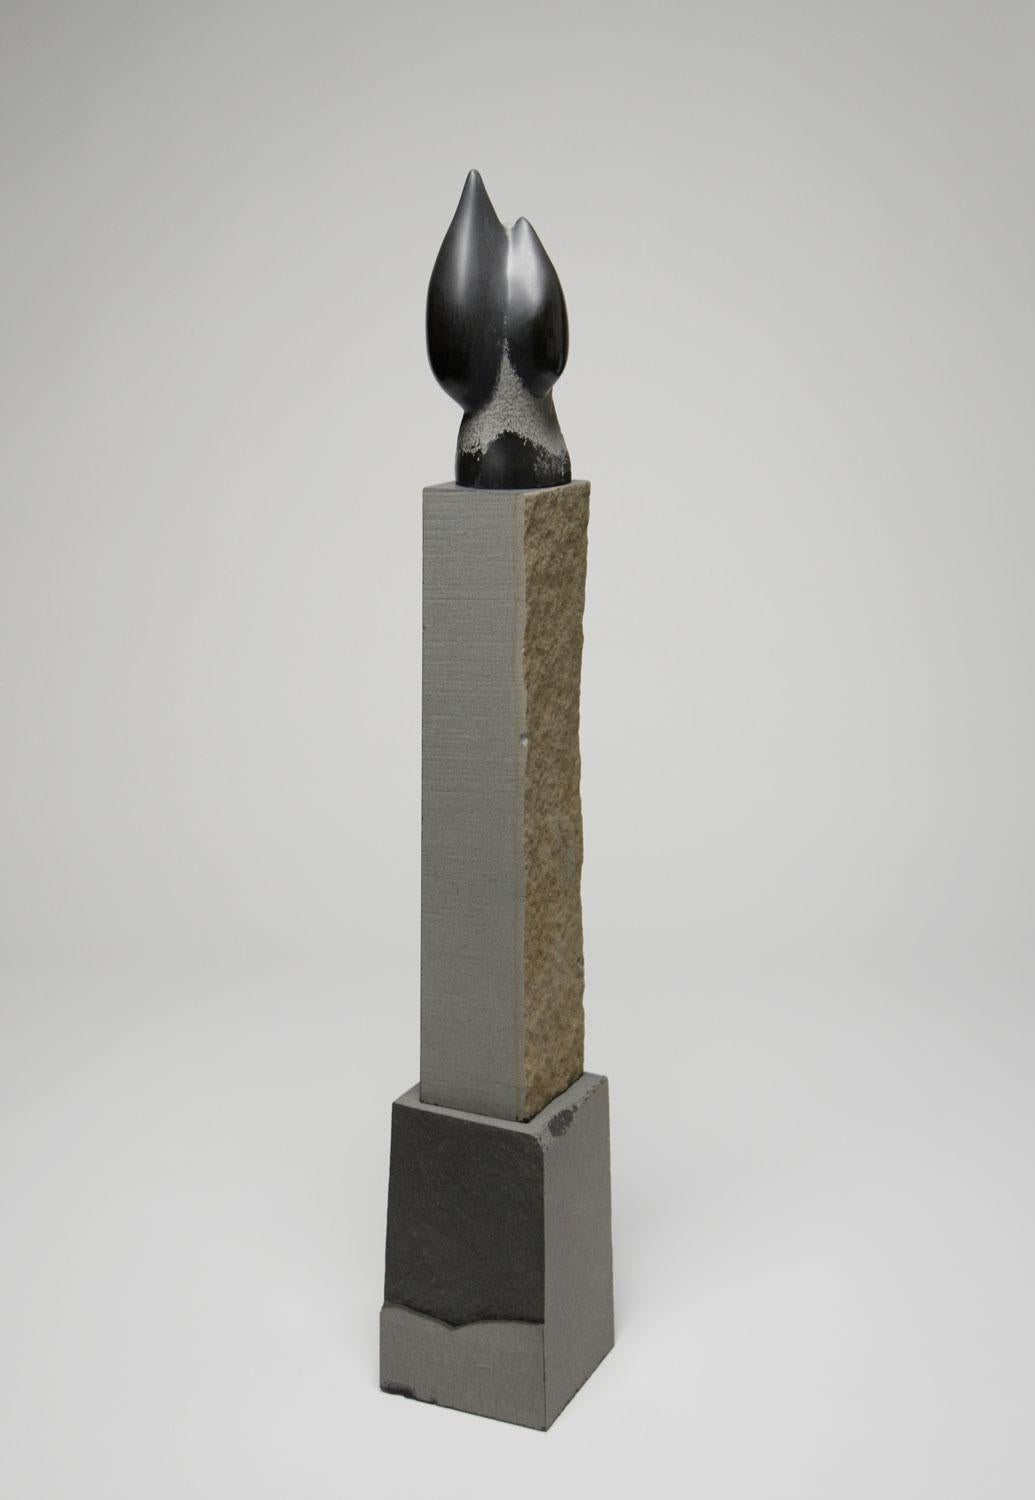 Rebecca Johnson Abstract Sculpture - "Seep" basalt stone sculpture